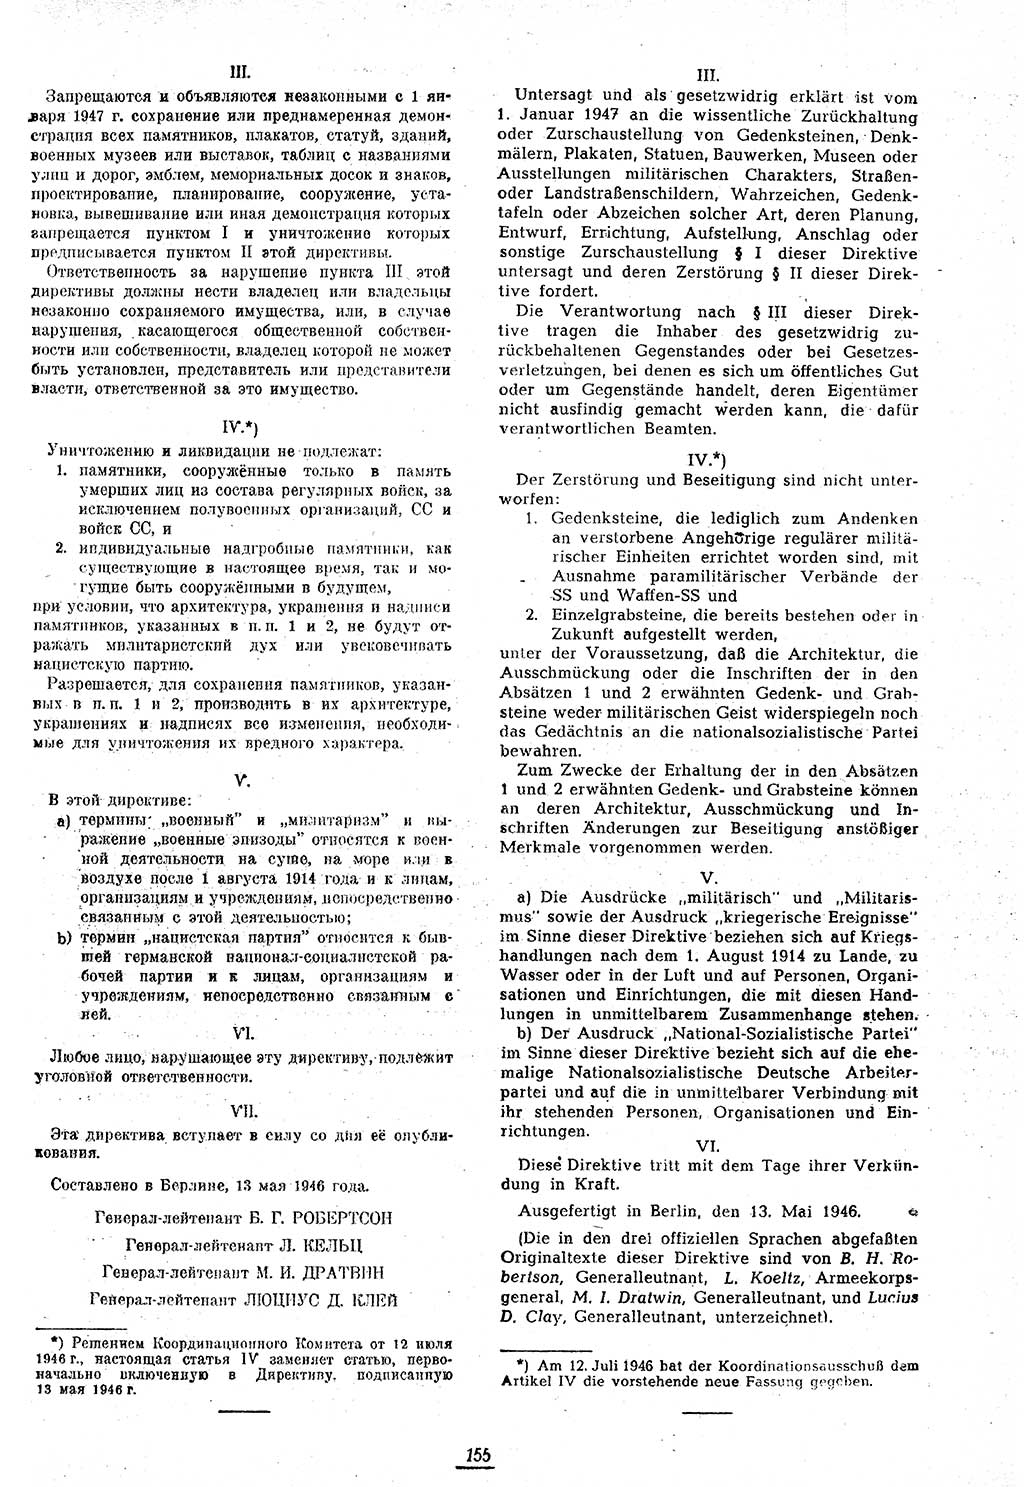 Amtsblatt des Kontrollrats (ABlKR) in Deutschland 1946, Seite 155/2 (ABlKR Dtl. 1946, S. 155/2)